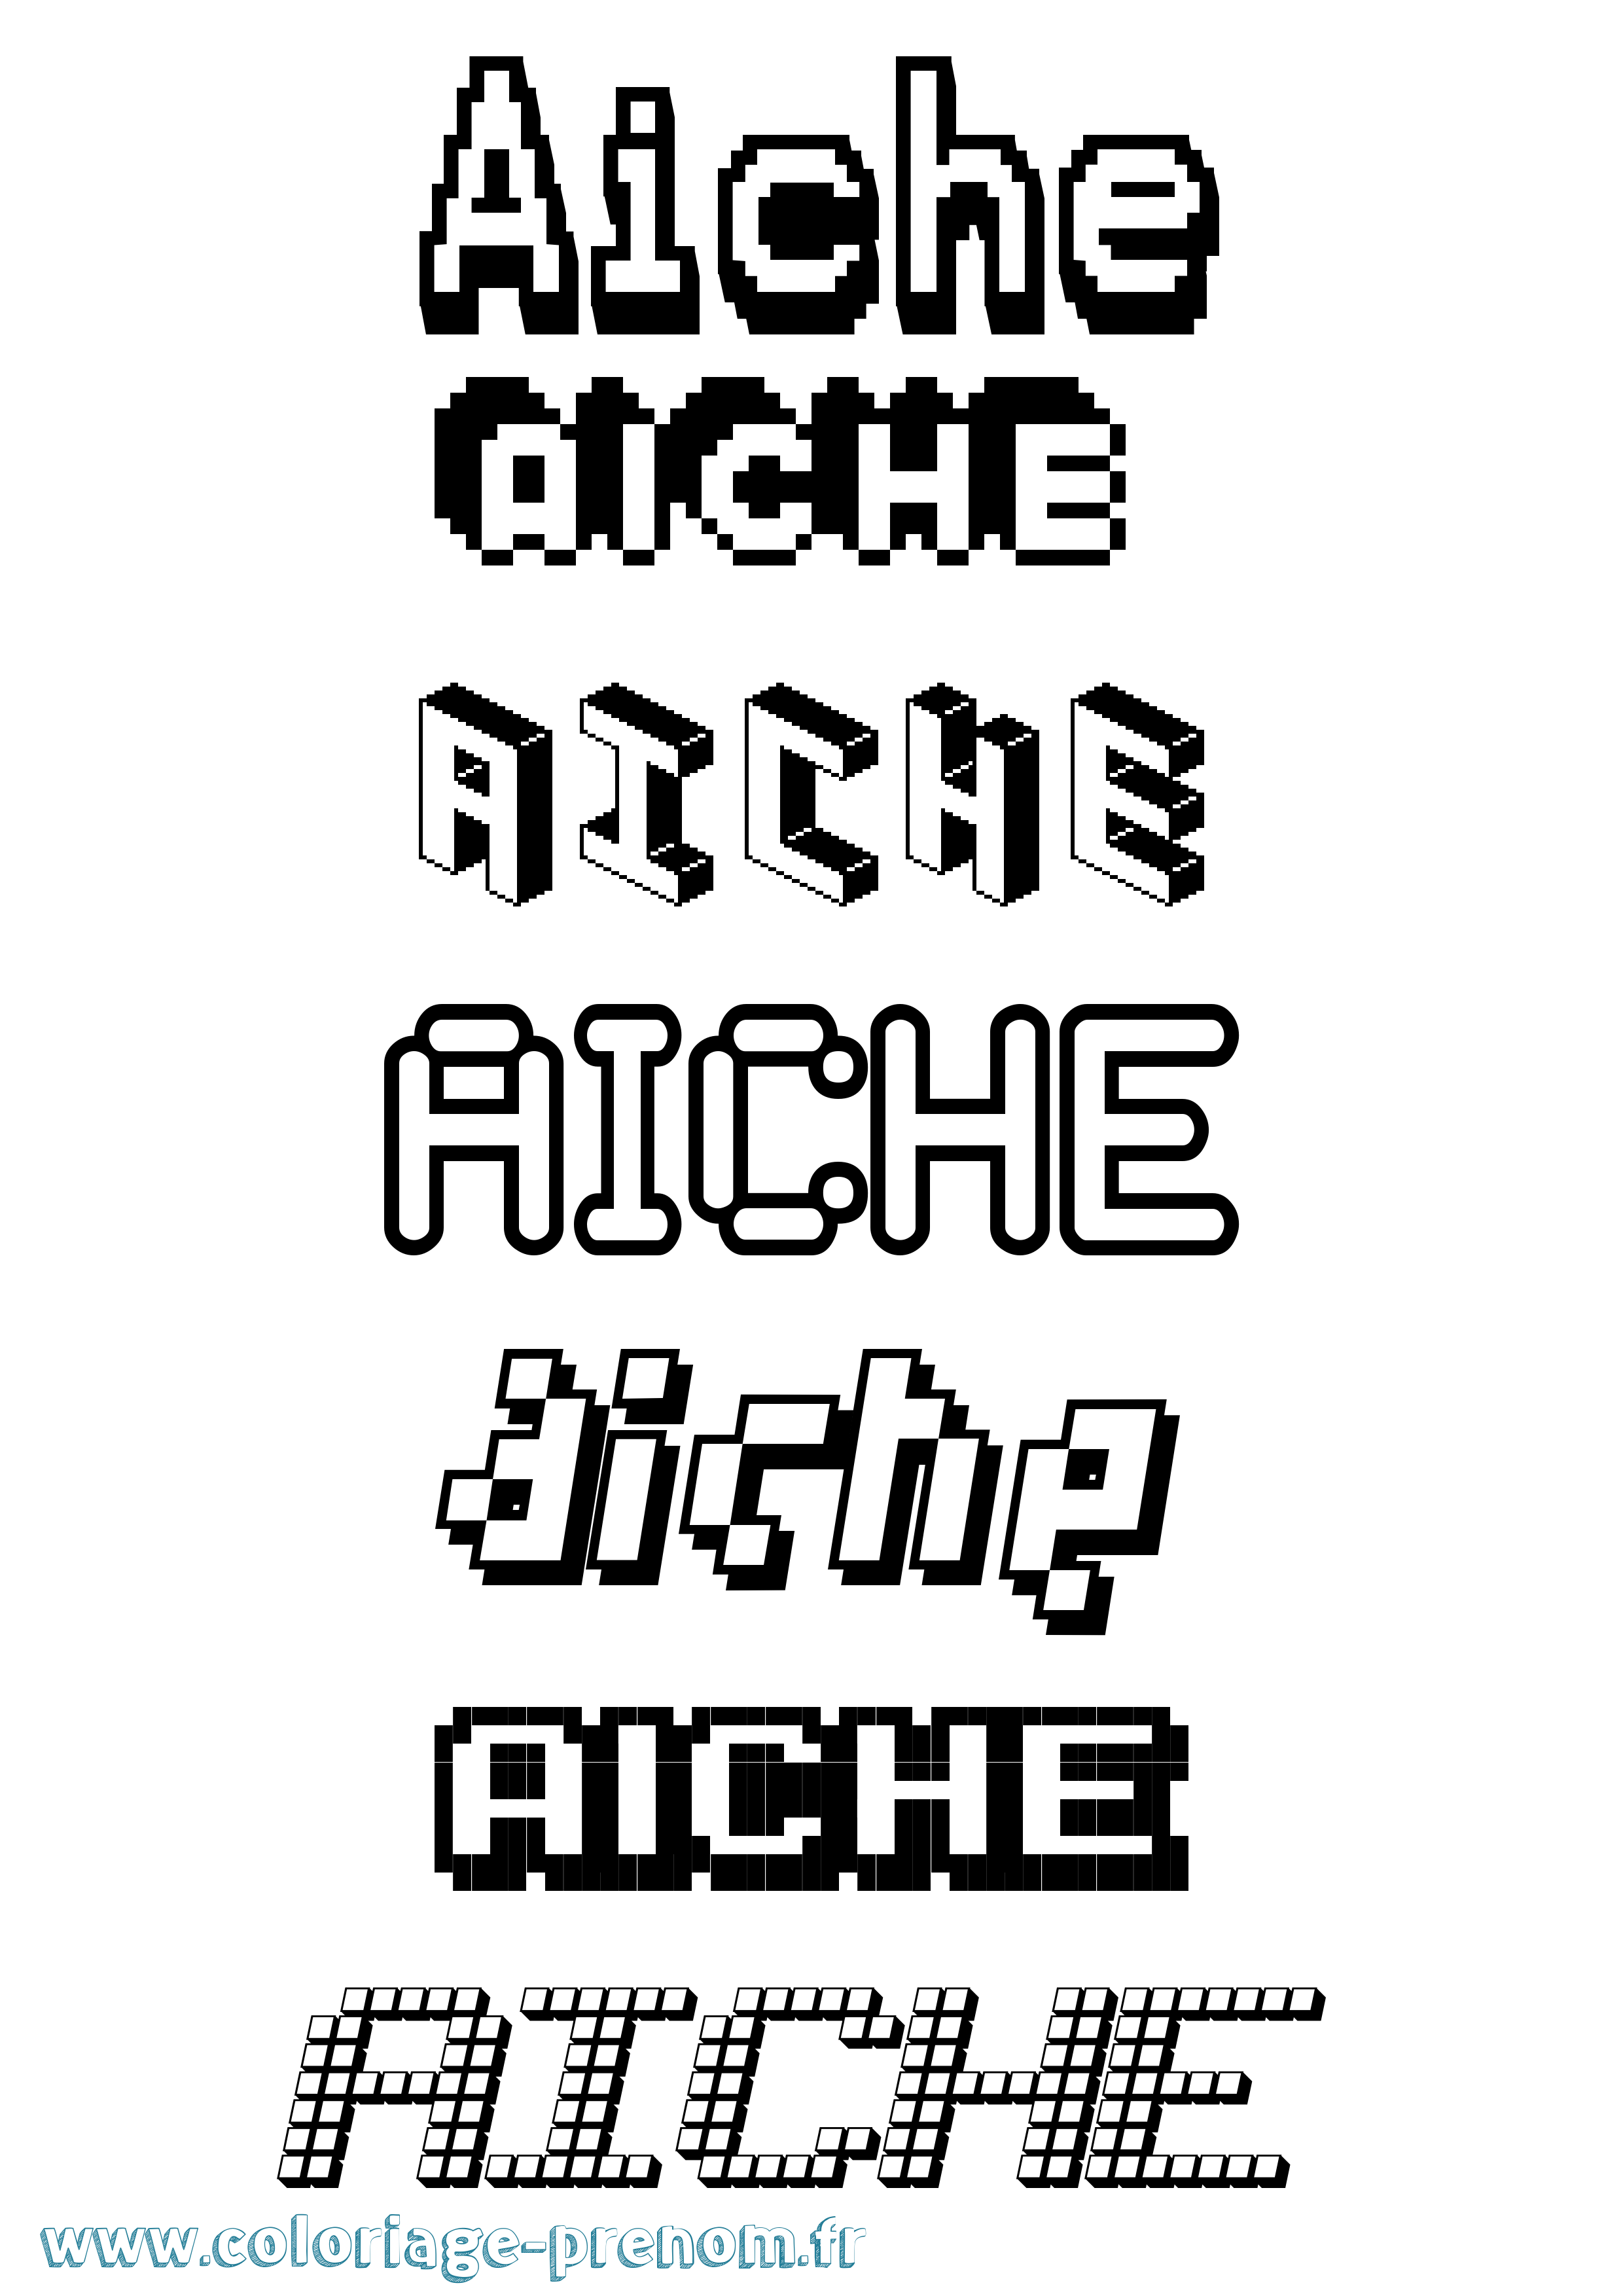 Coloriage prénom Aiche Pixel